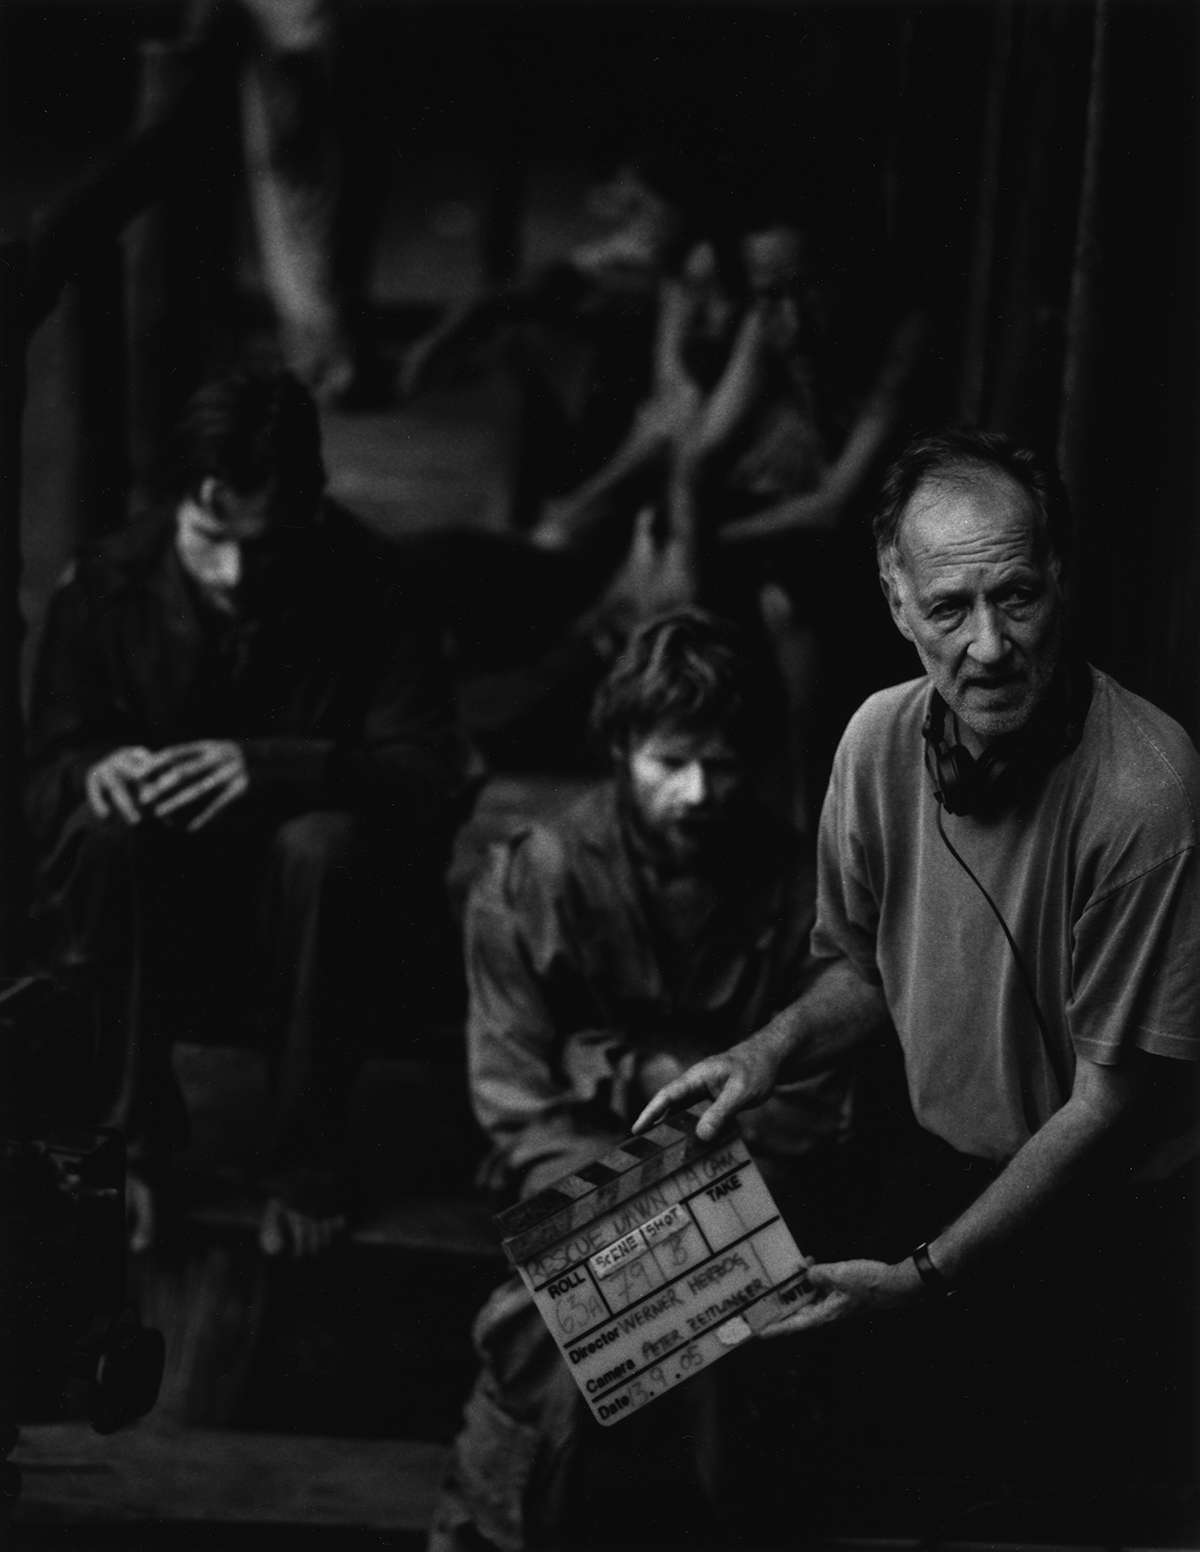 Schwarz-weiß-Foto: Im Vordergrund der Regisseur mit Regieklappe, im Hintergrund (verschwommen) sitzen die Schauspieler.